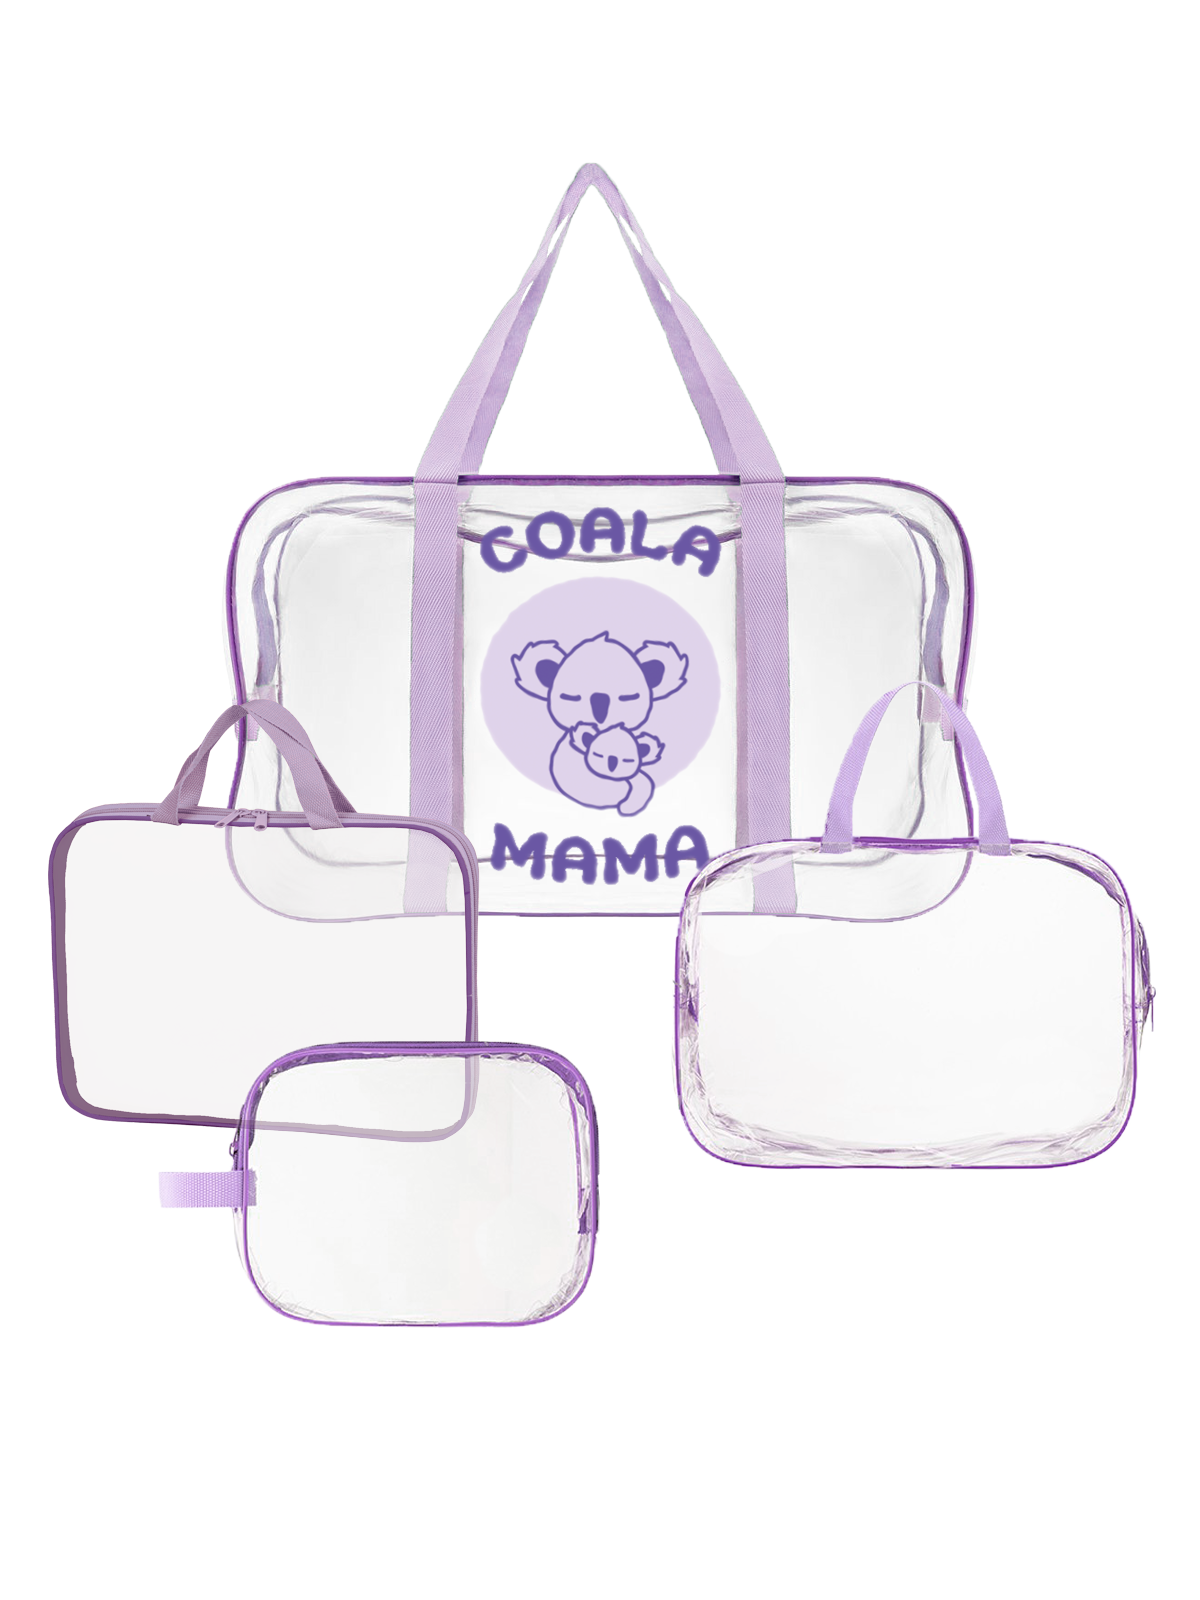 Набор сумок в роддом Coala Mama, Light Violet, 4 шт универсальных размеров